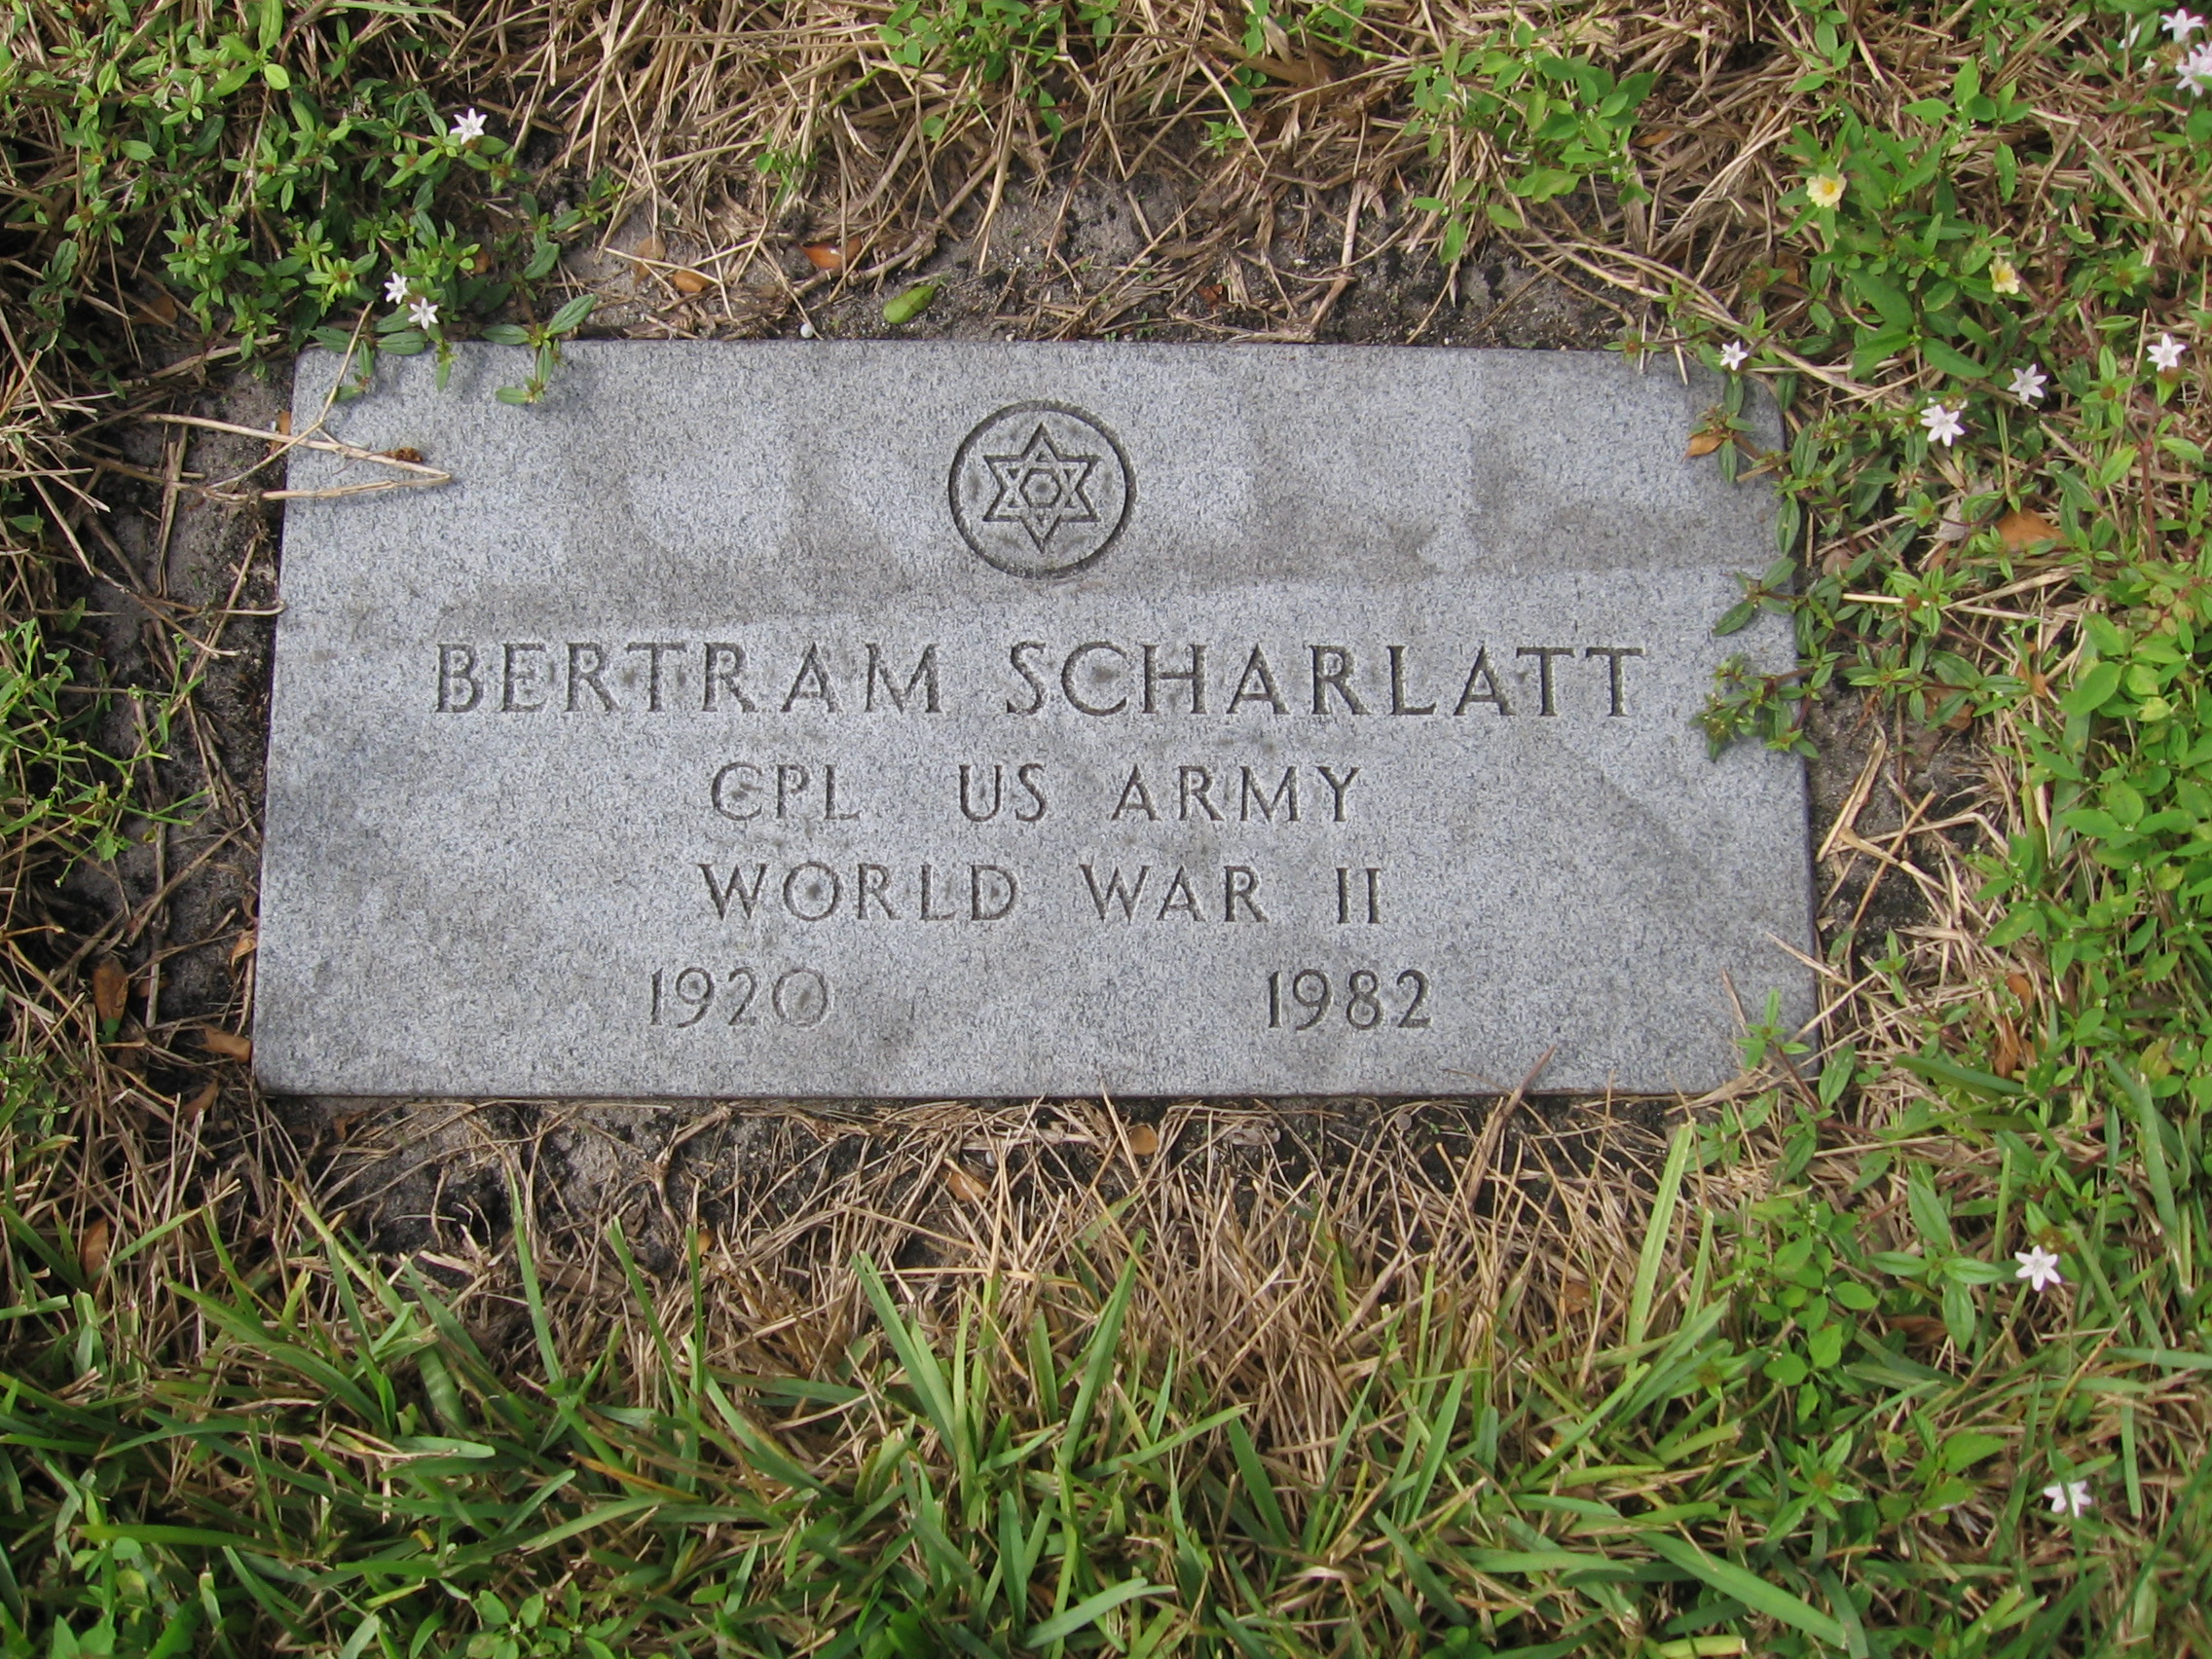 Corp Bertram Scharlatt